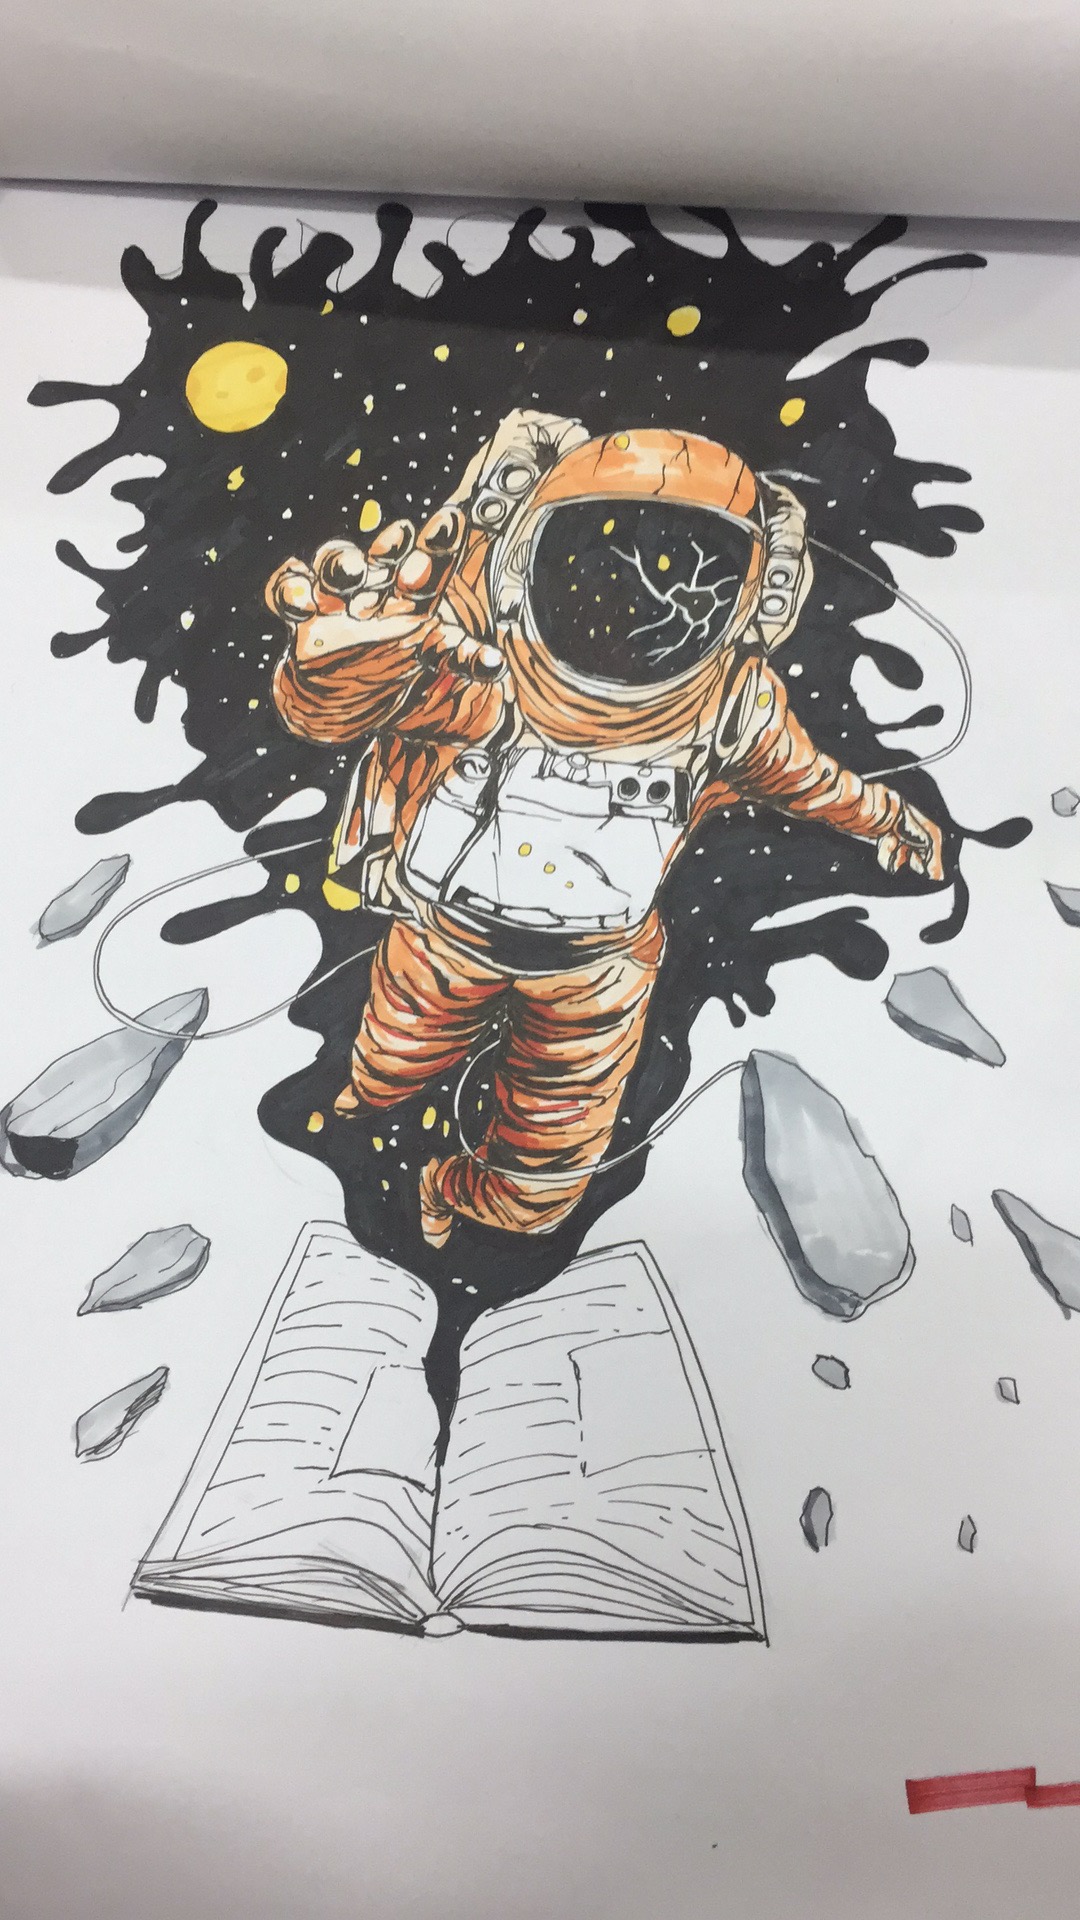 宇航员水粉画图片